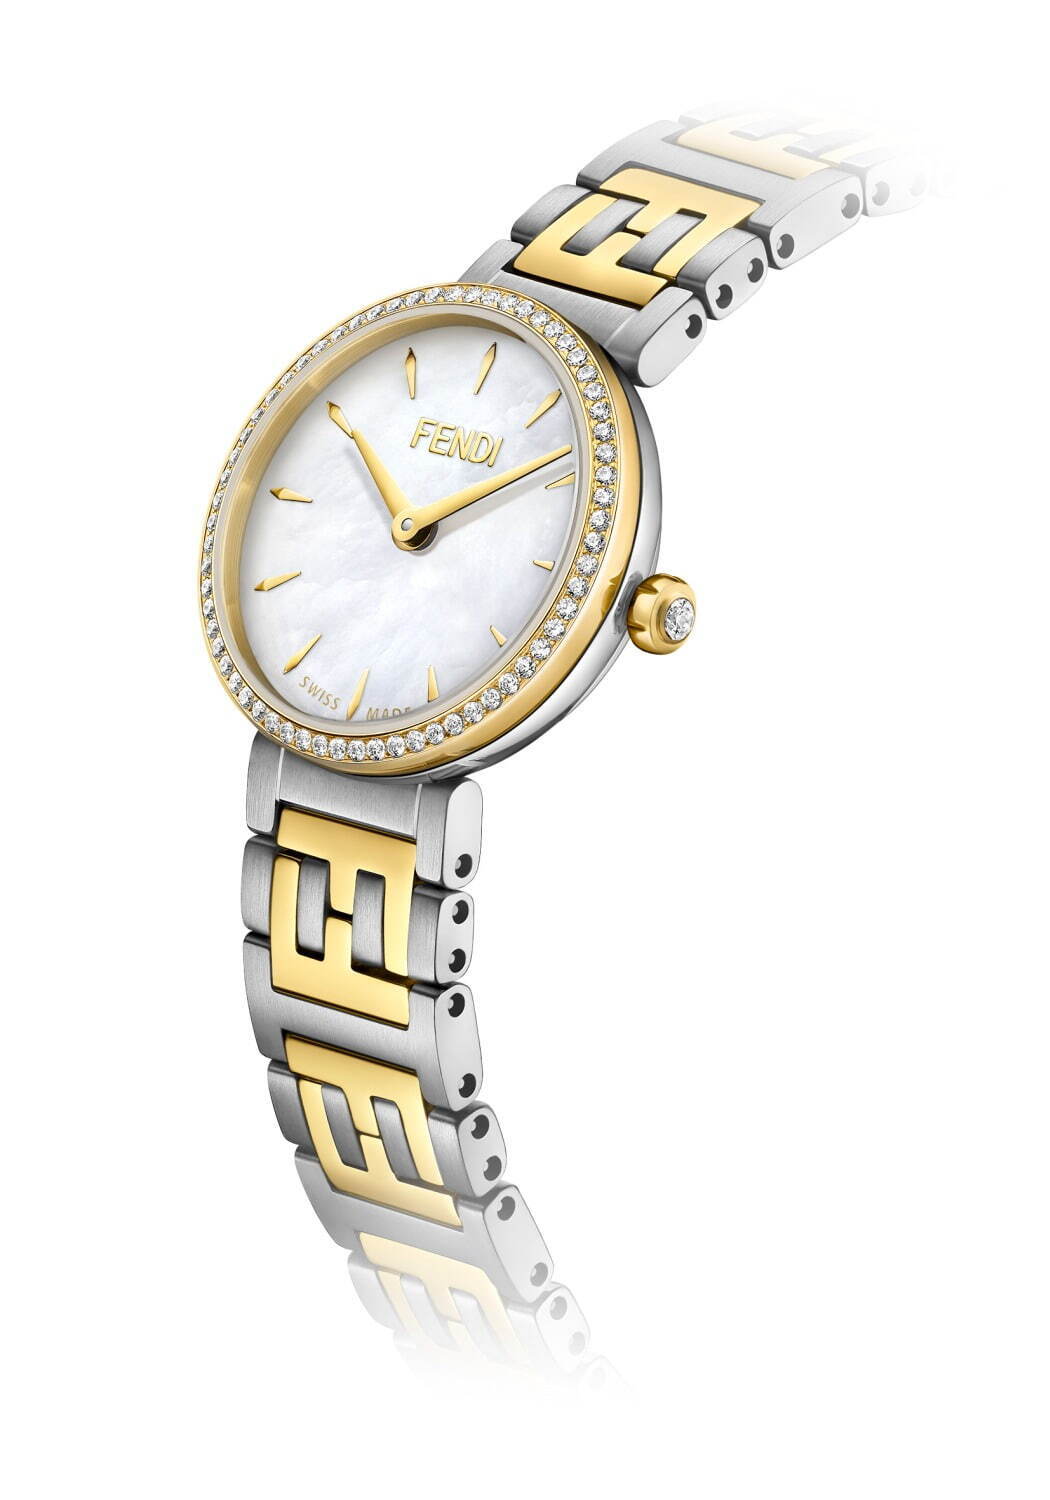 フェンディのウィメンズ向け新作腕時計、FFロゴのブレスレット